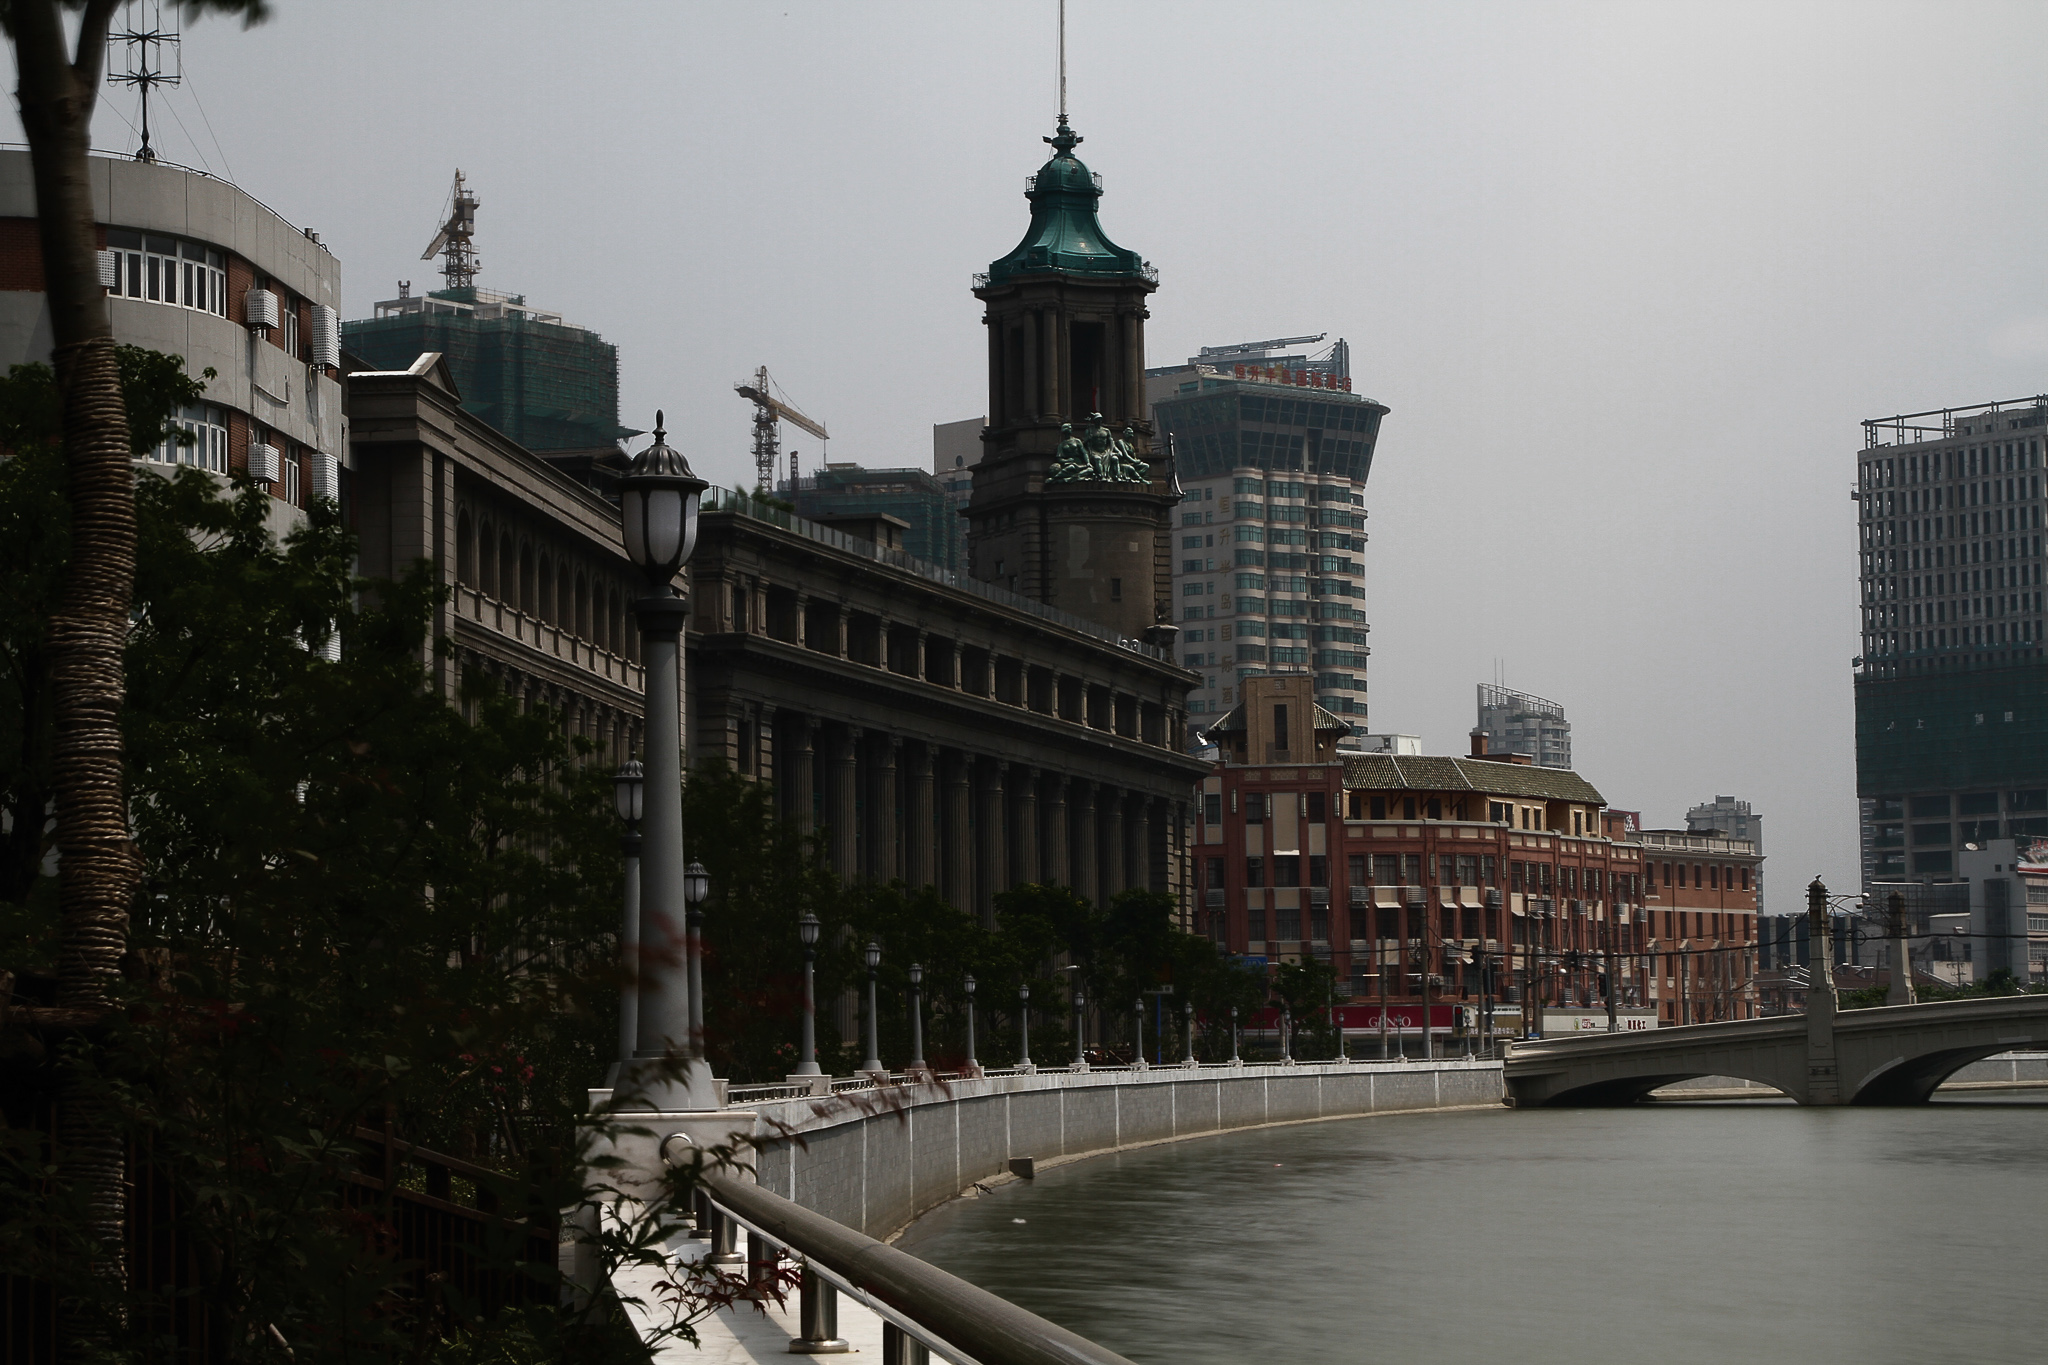 Empty Shanghai for SIgnatures